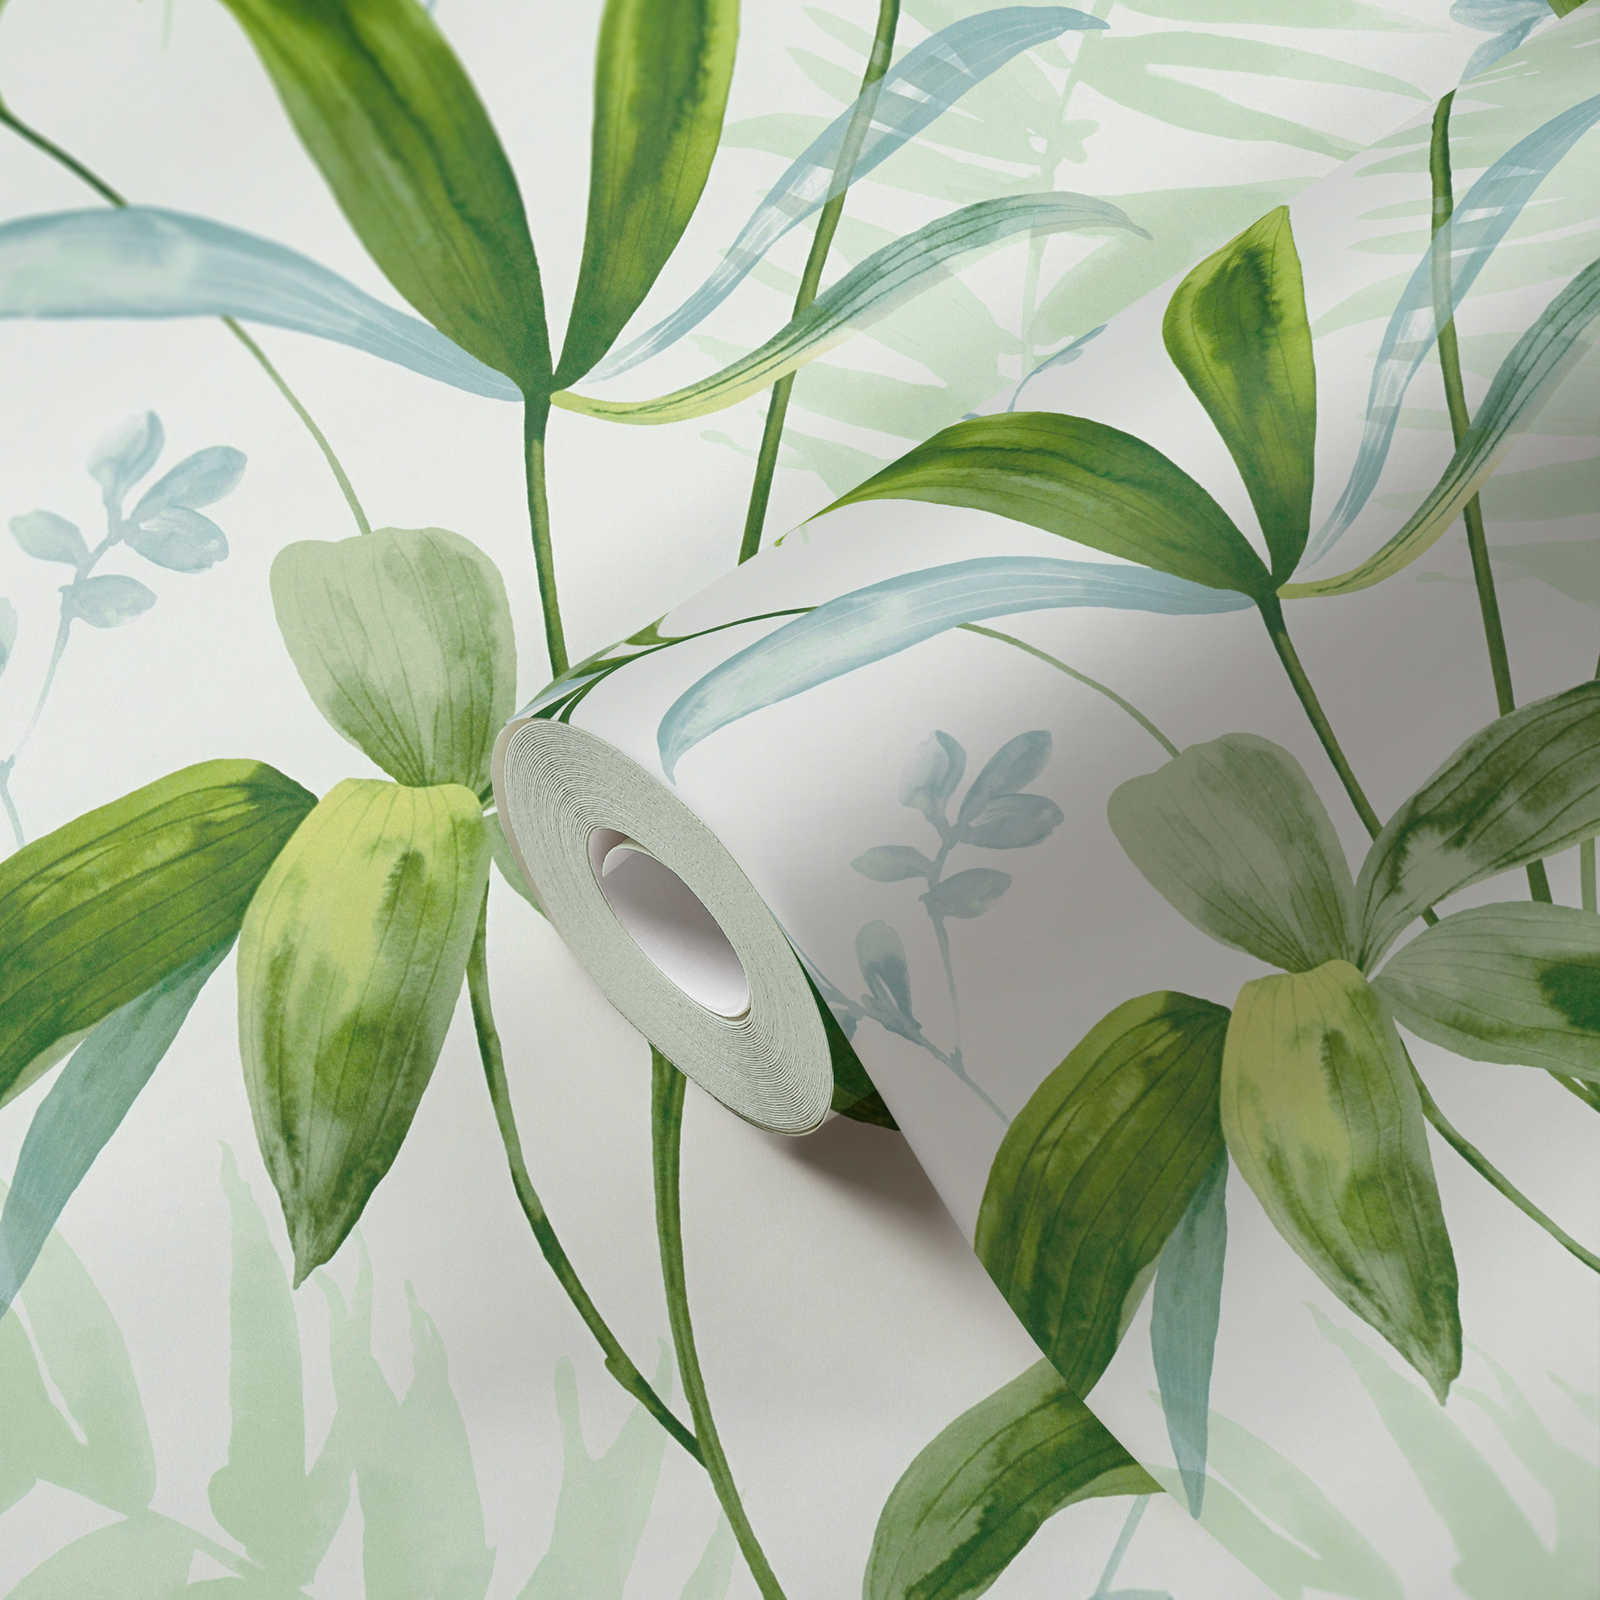             Papel pintado no tejido hojas verdes en estilo acuarela - verde, blanco
        